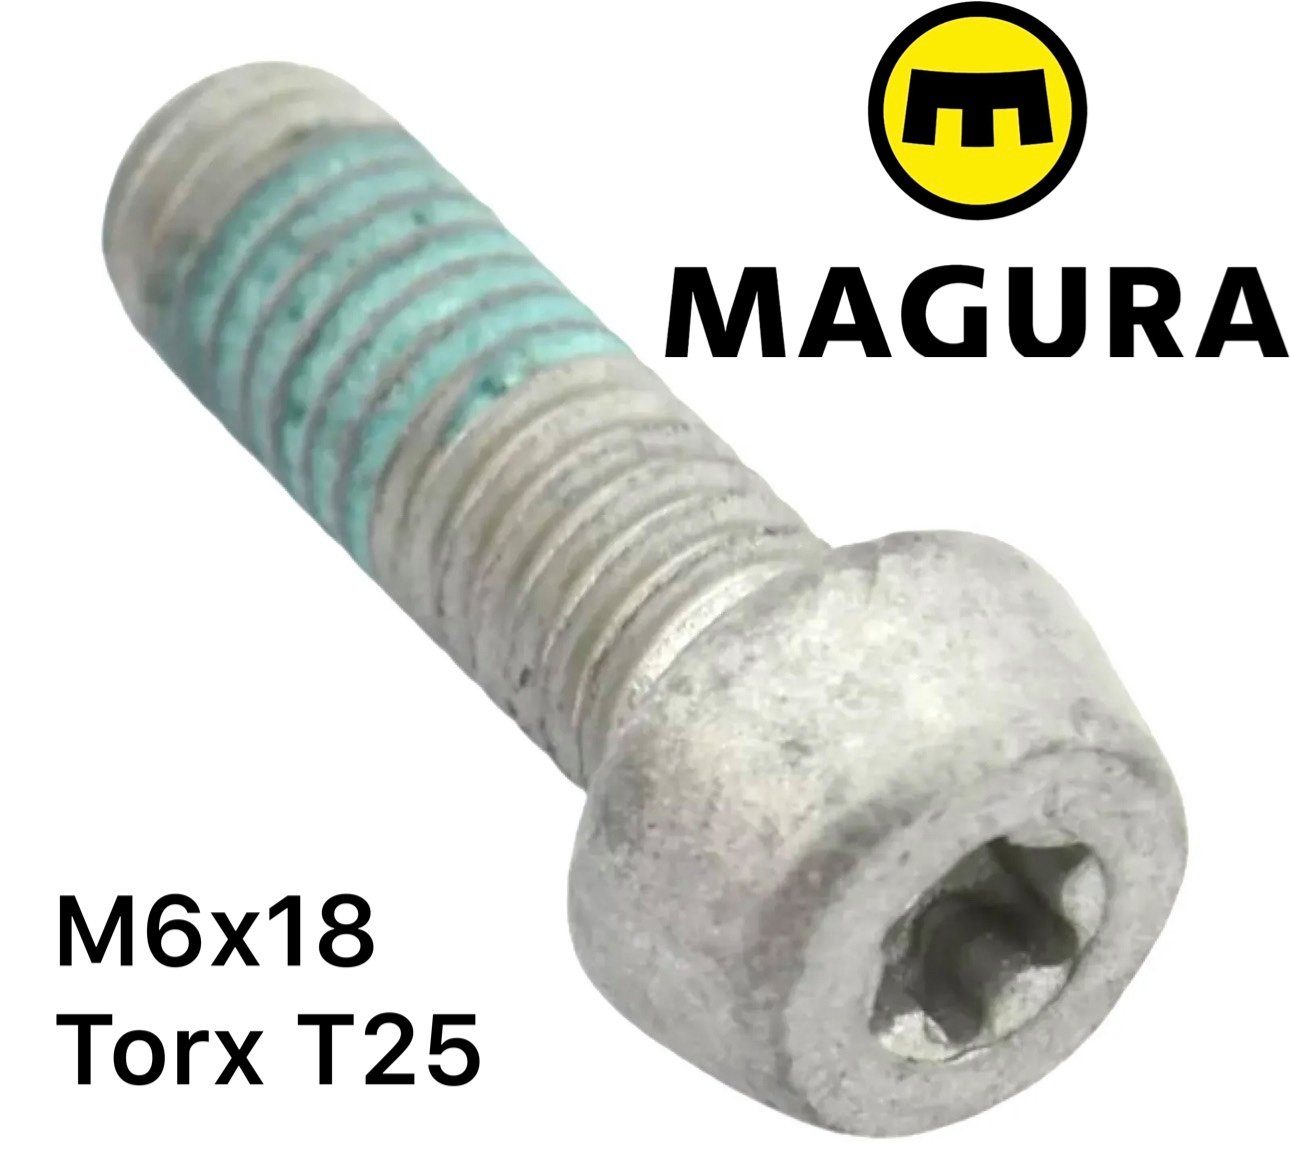 Magura Schrauben-Set Magura Adapter Alu T25 M6x18 Befestigungschraube Torx